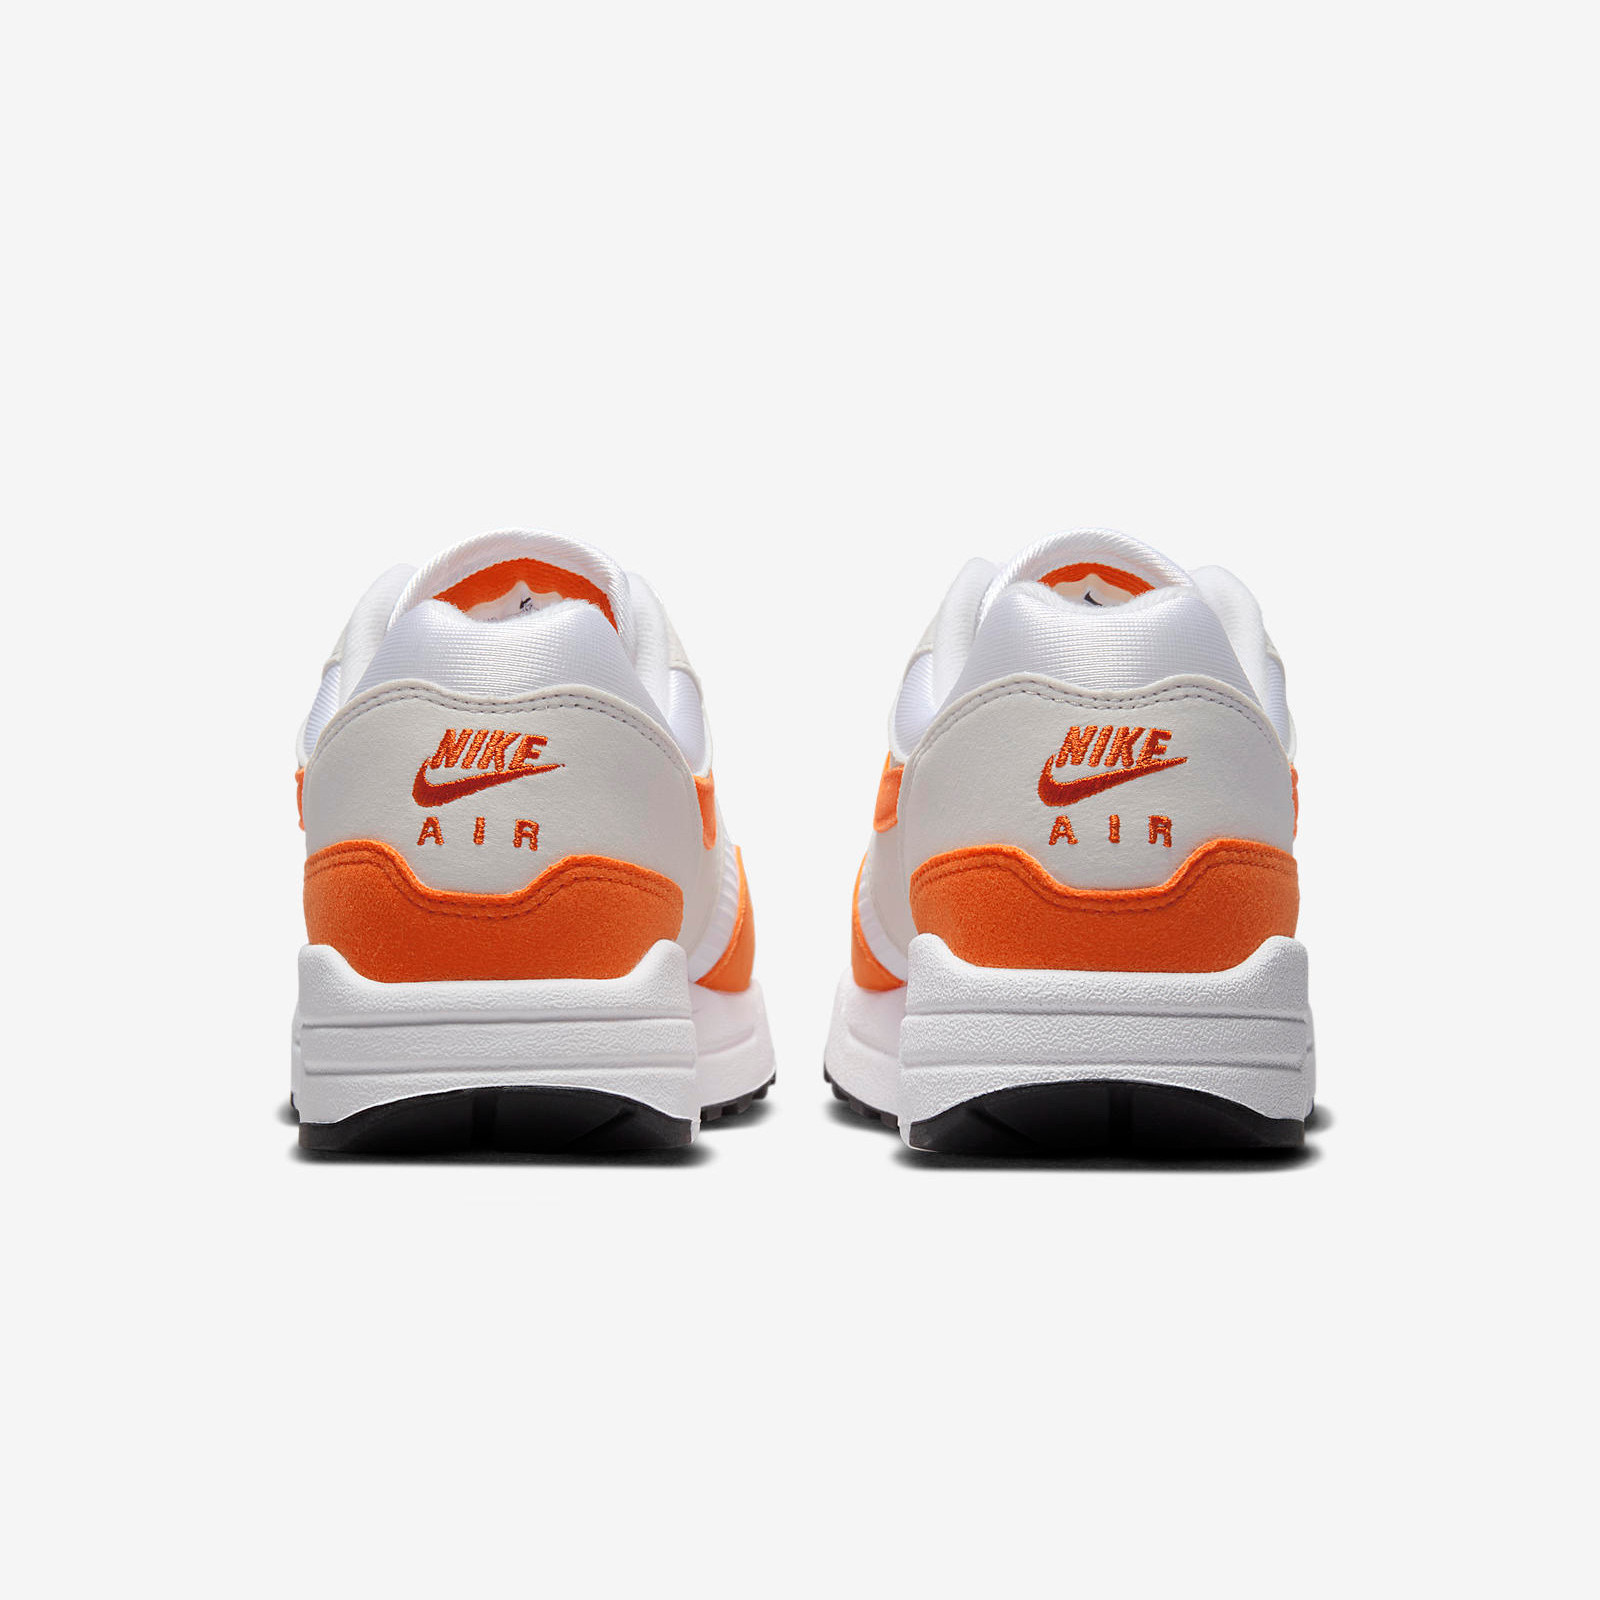 Nike Air Max 1
« Safety Orange »